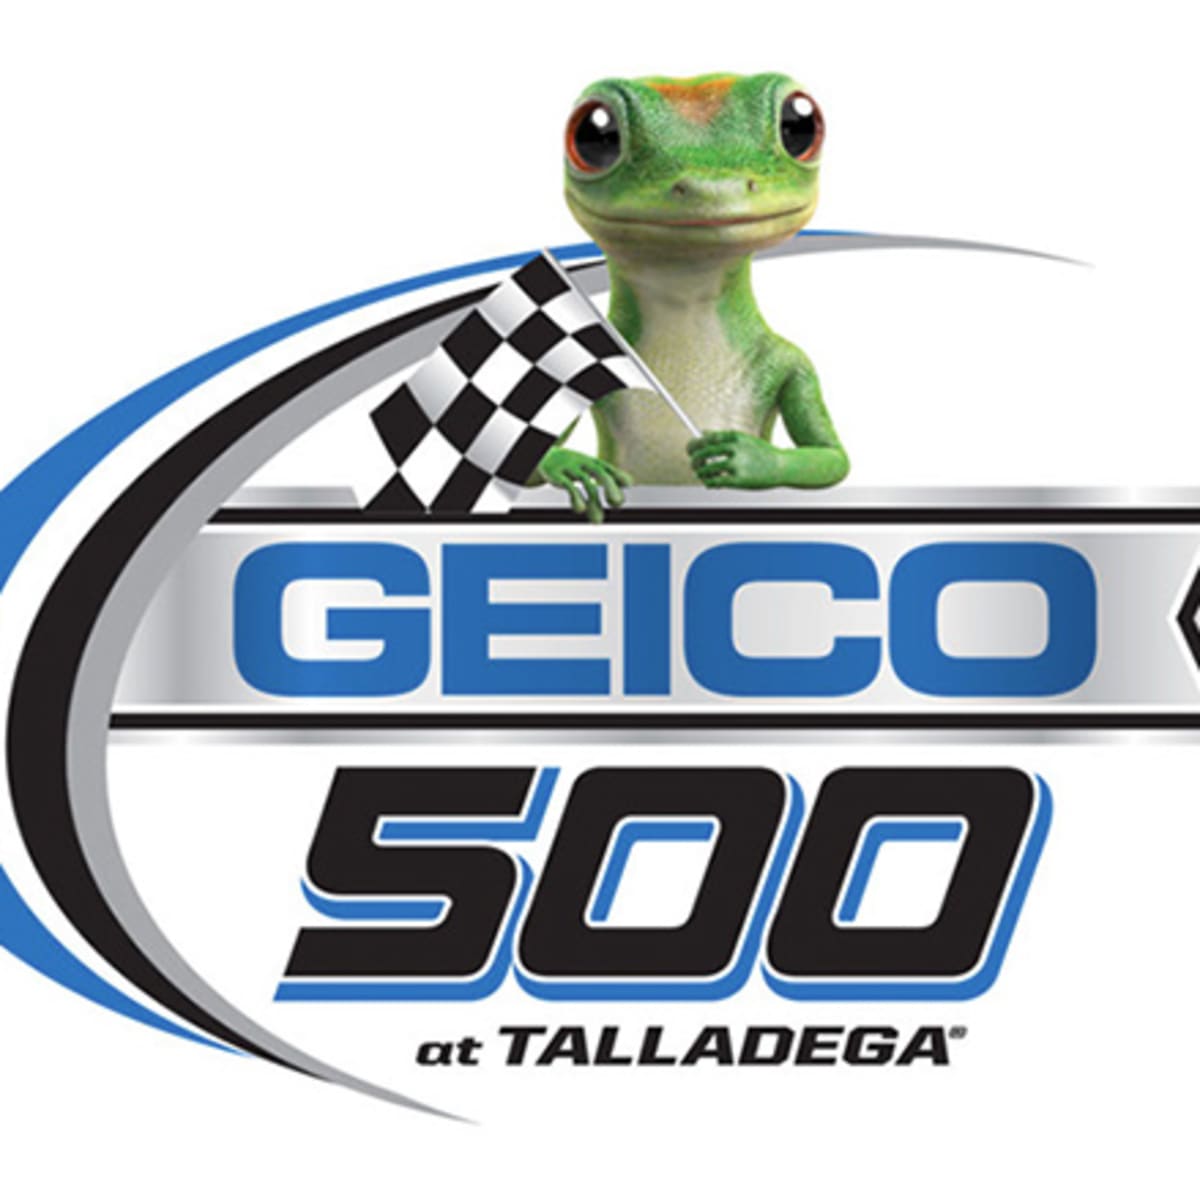 GEICO 500 (Talladega) NASCAR Preview and Fantasy Predictions